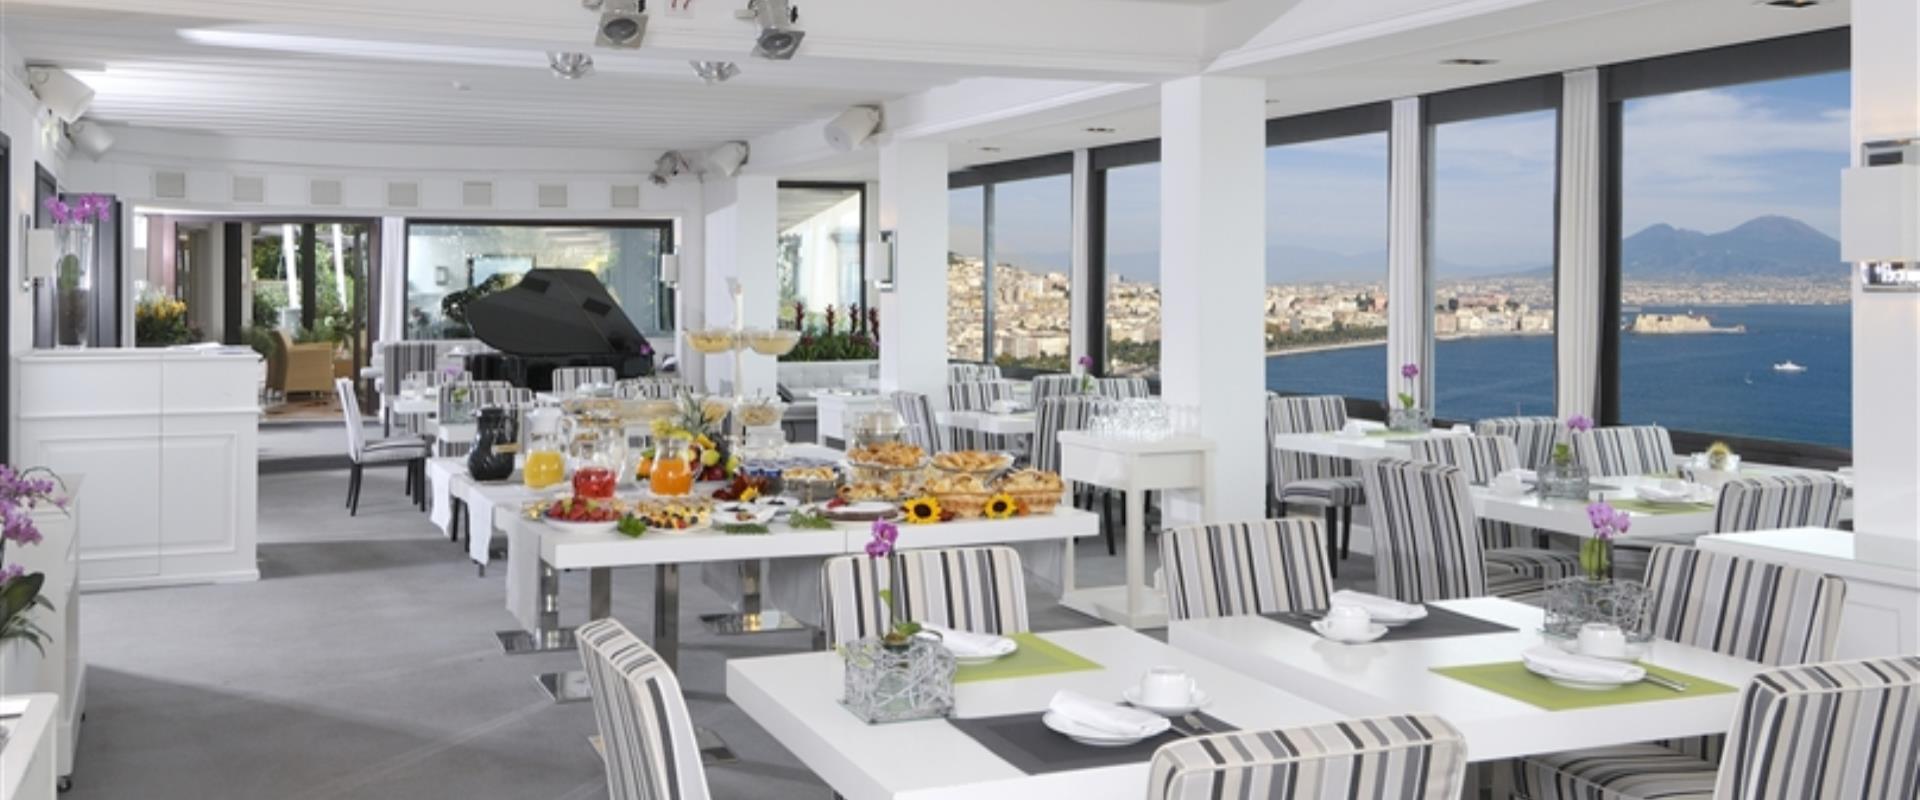 ресторан BW Signature Collection Hotel Paradiso в Napoli предлагает местную кухню.